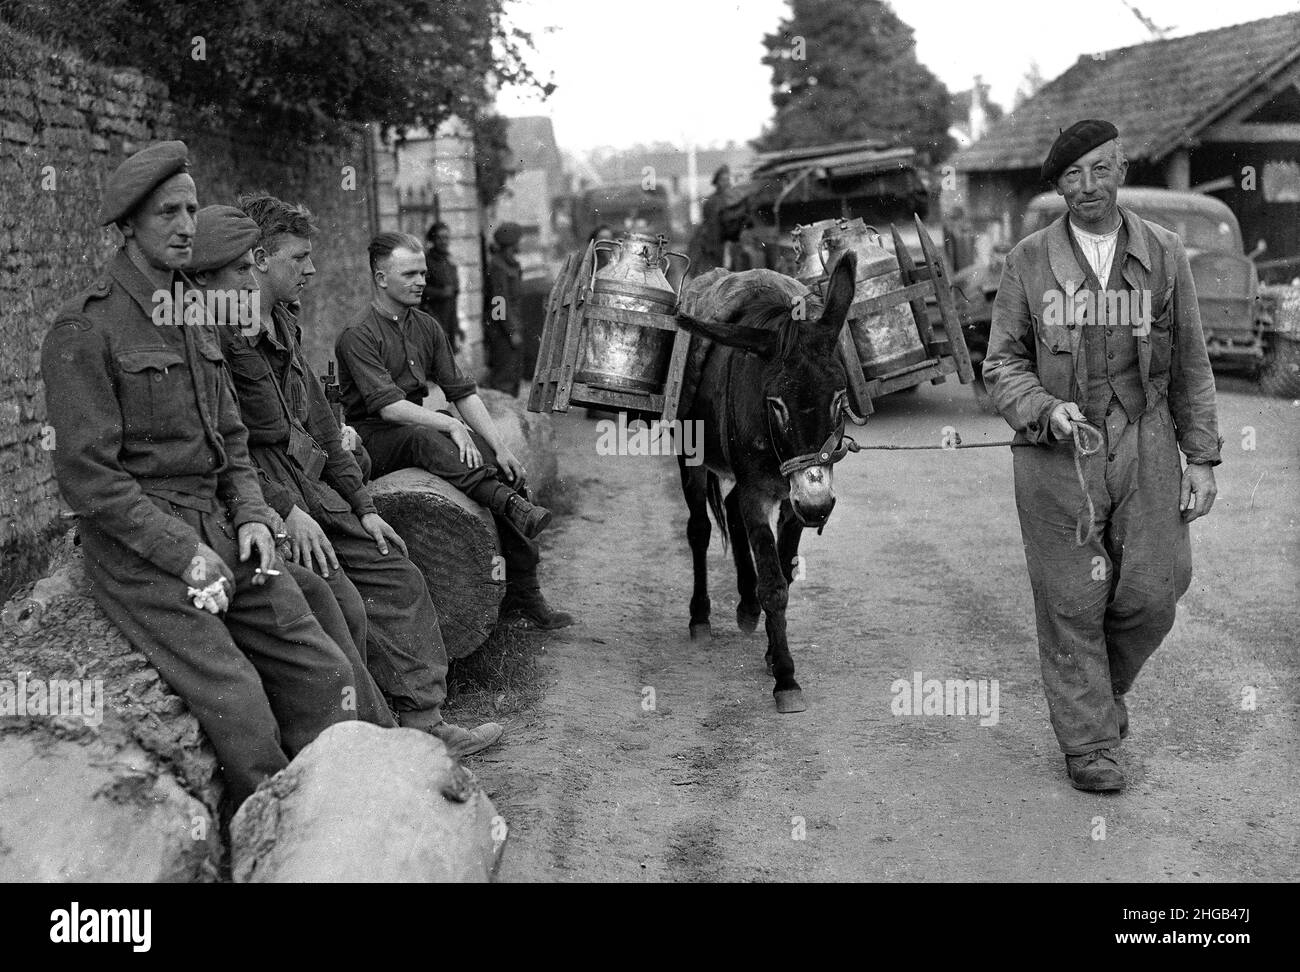 Nord de la France Seconde Guerre mondiale 1944 soldats britanniques observant un agriculteur français livrant du lait avec un âne.FICHIERS PLUS VOLUMINEUX DISPONIBLES SUR DEMANDE Banque D'Images